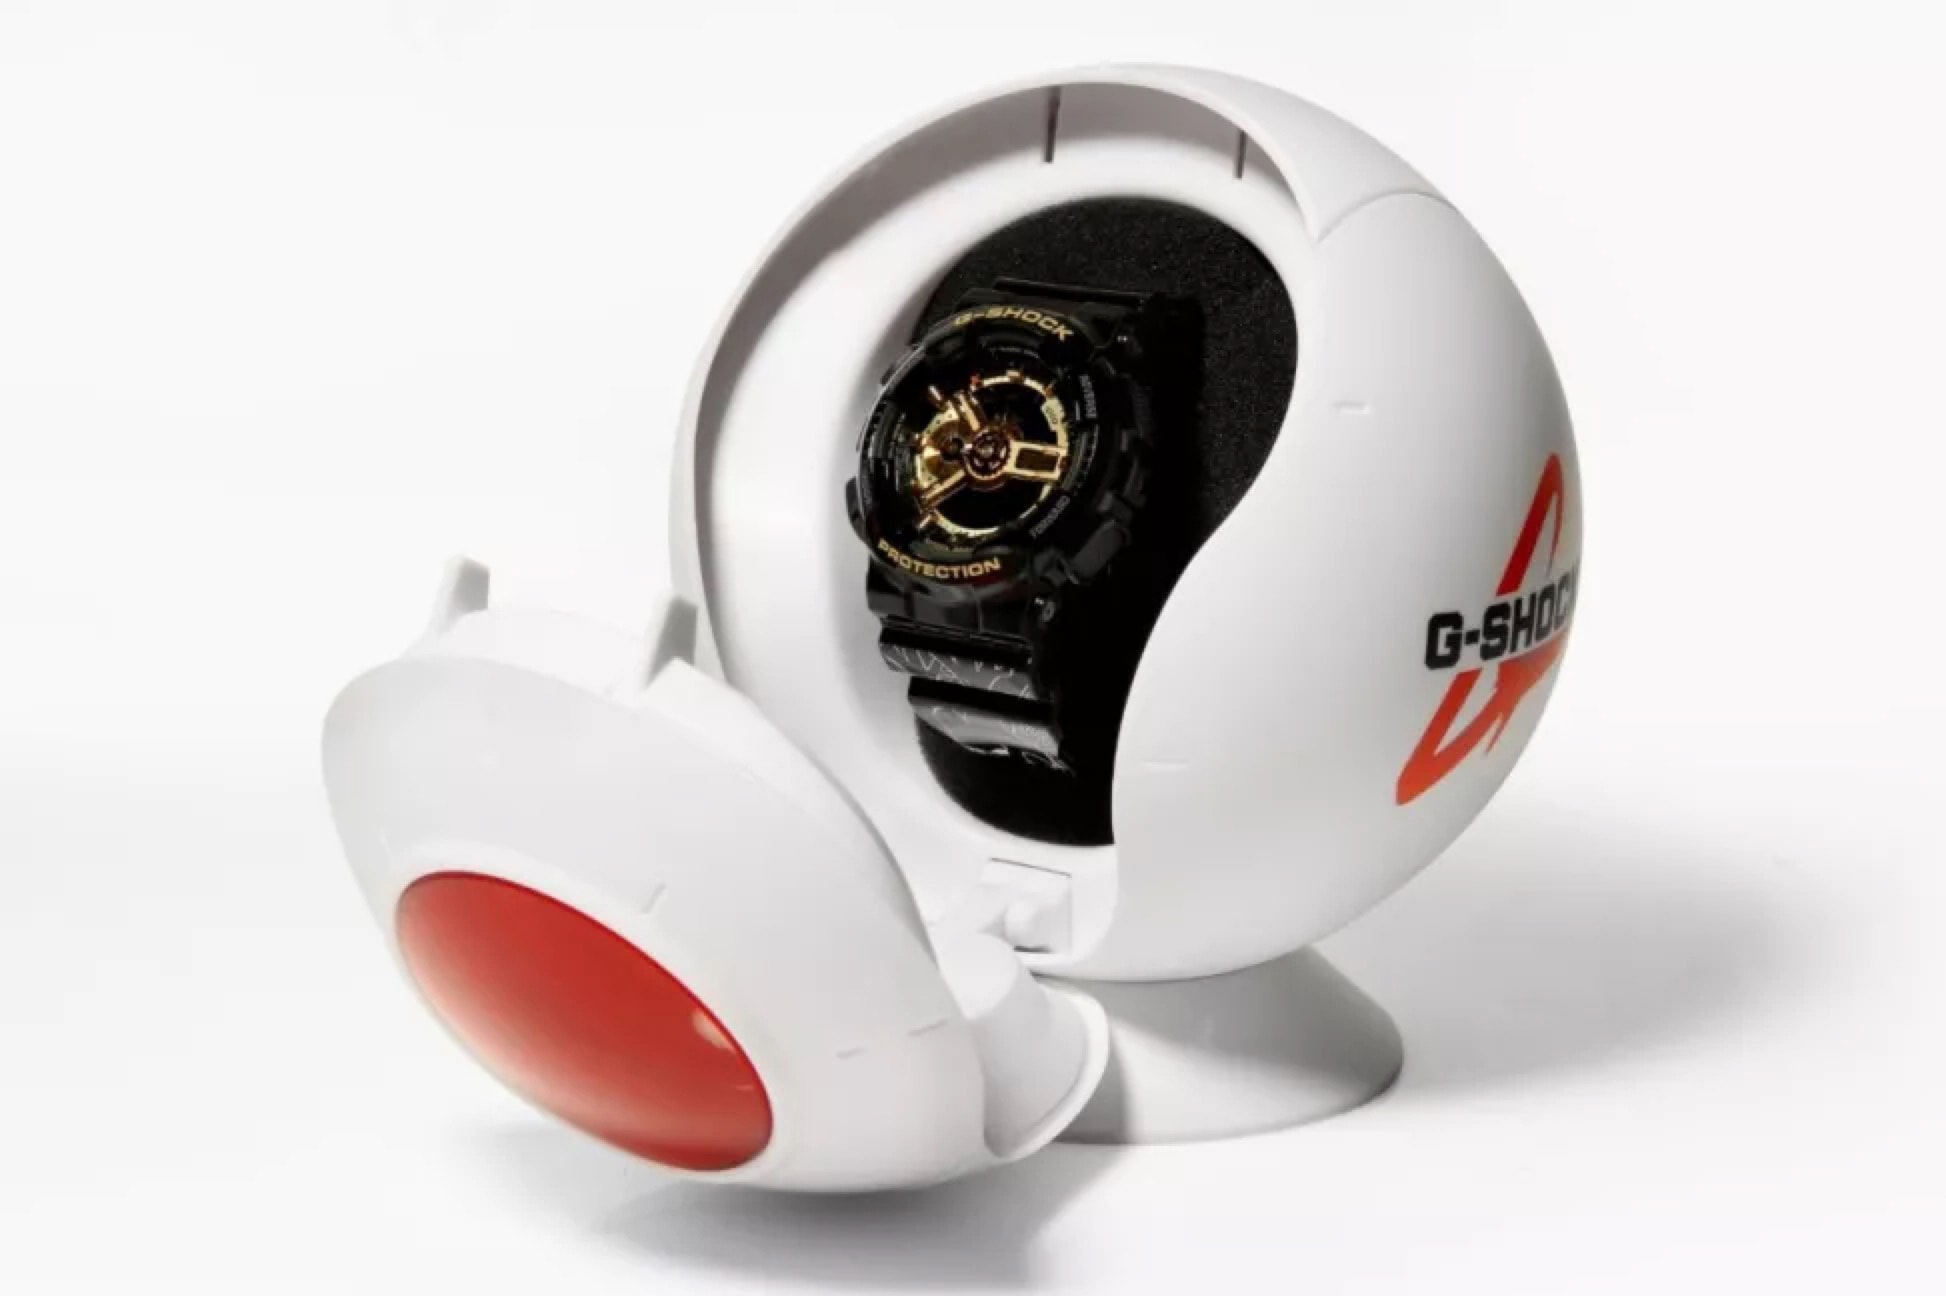 《Dragon Ball Super》x G-SHOCK 聯名錶款釋出